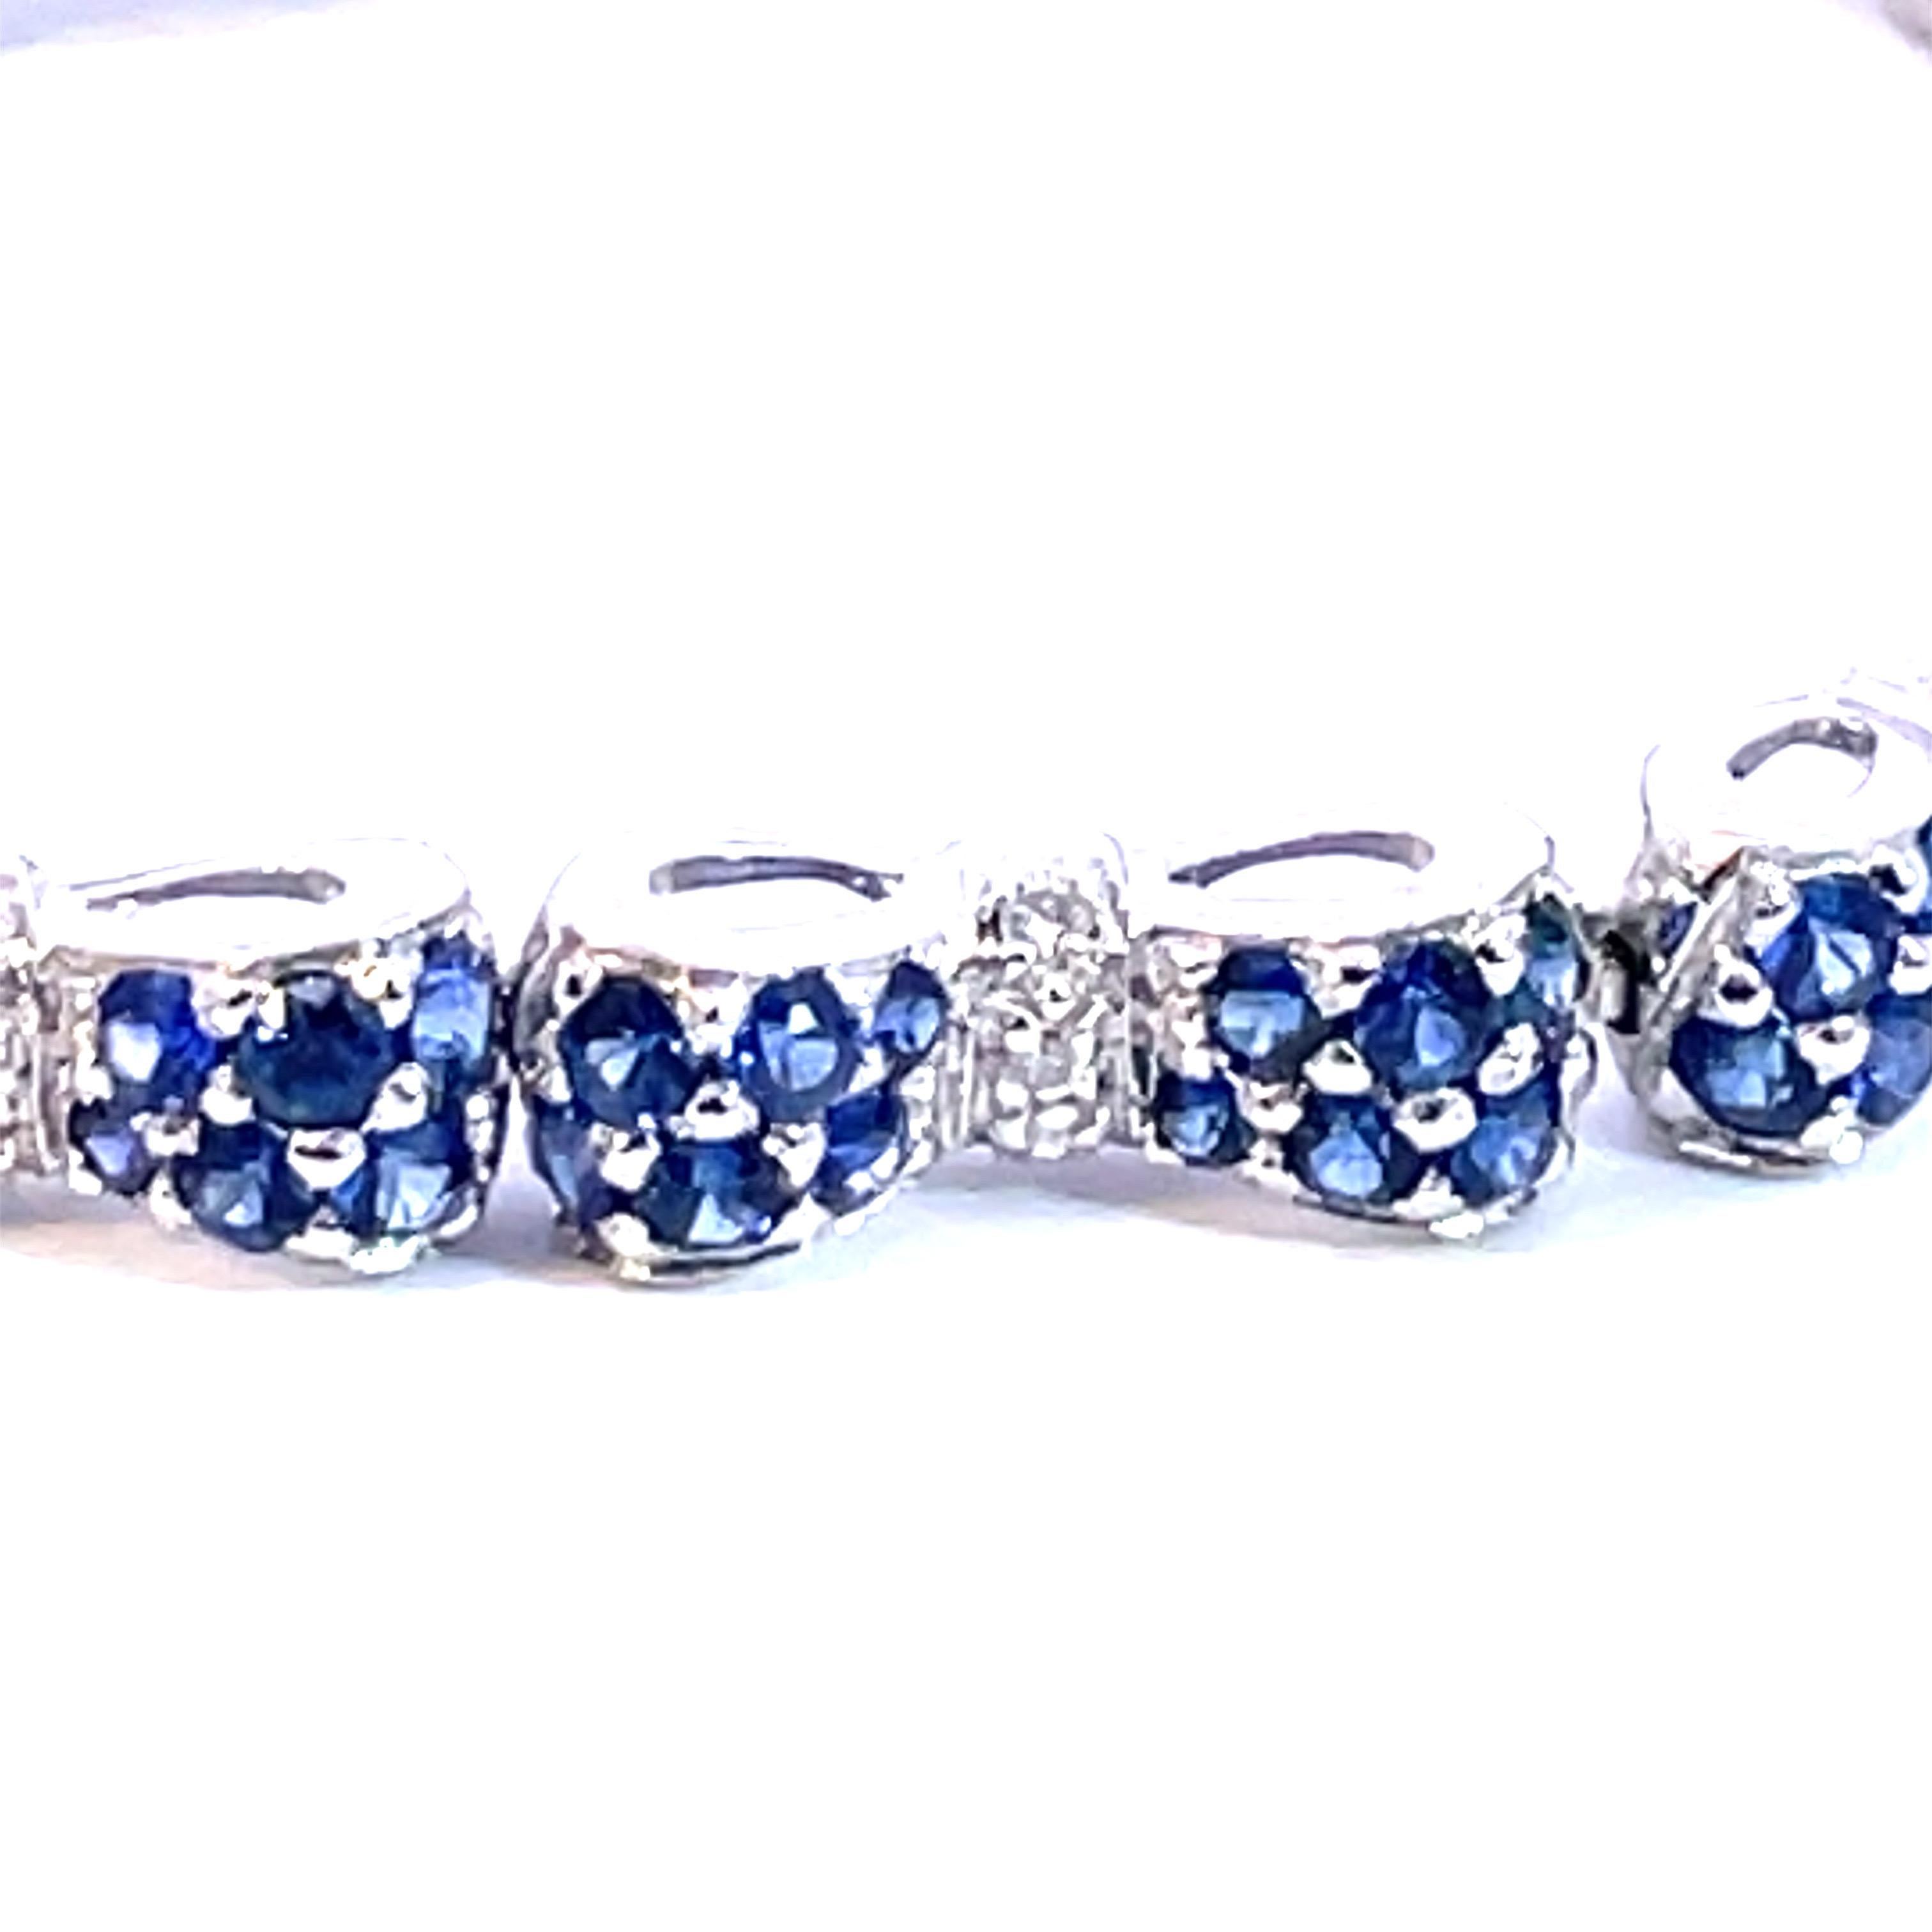 Un magnifique bracelet nœud papillon serti de saphirs bleus naturels et de diamants blancs naturels en or blanc 18kt.

144 Nature  saphirs bleus pesant 6.00ct poids total

36 diamants blancs naturels d'un poids total de 0,30ct

Or blanc 18kt, 18